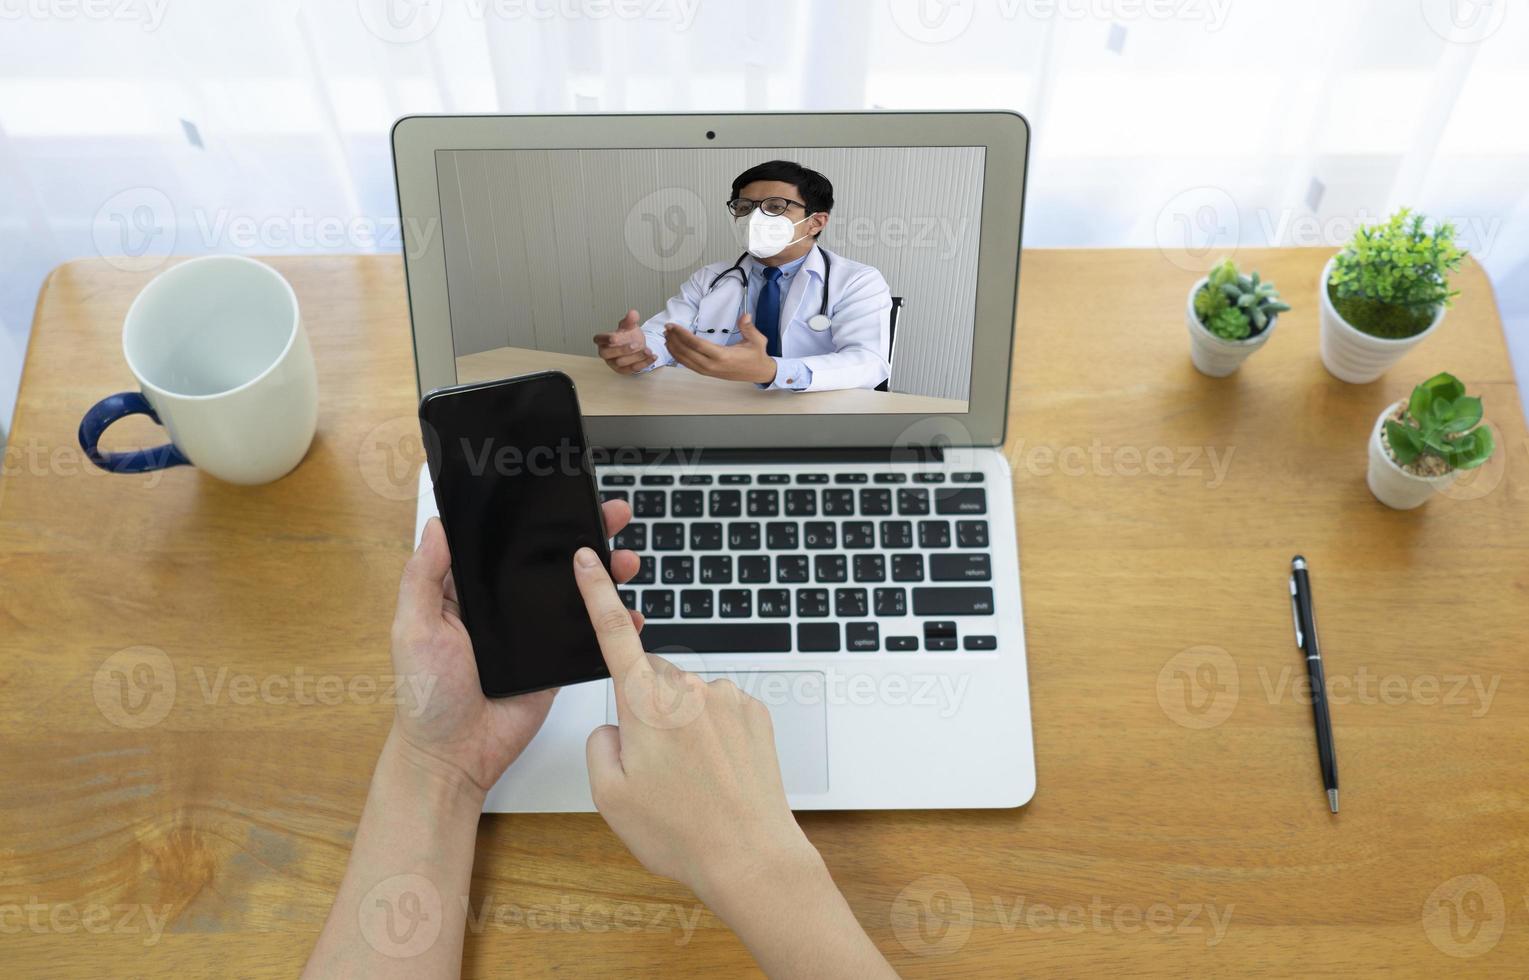 Patient konsultiert asiatischen Arzt per Videoanruf. telemedizinisches Konzept foto